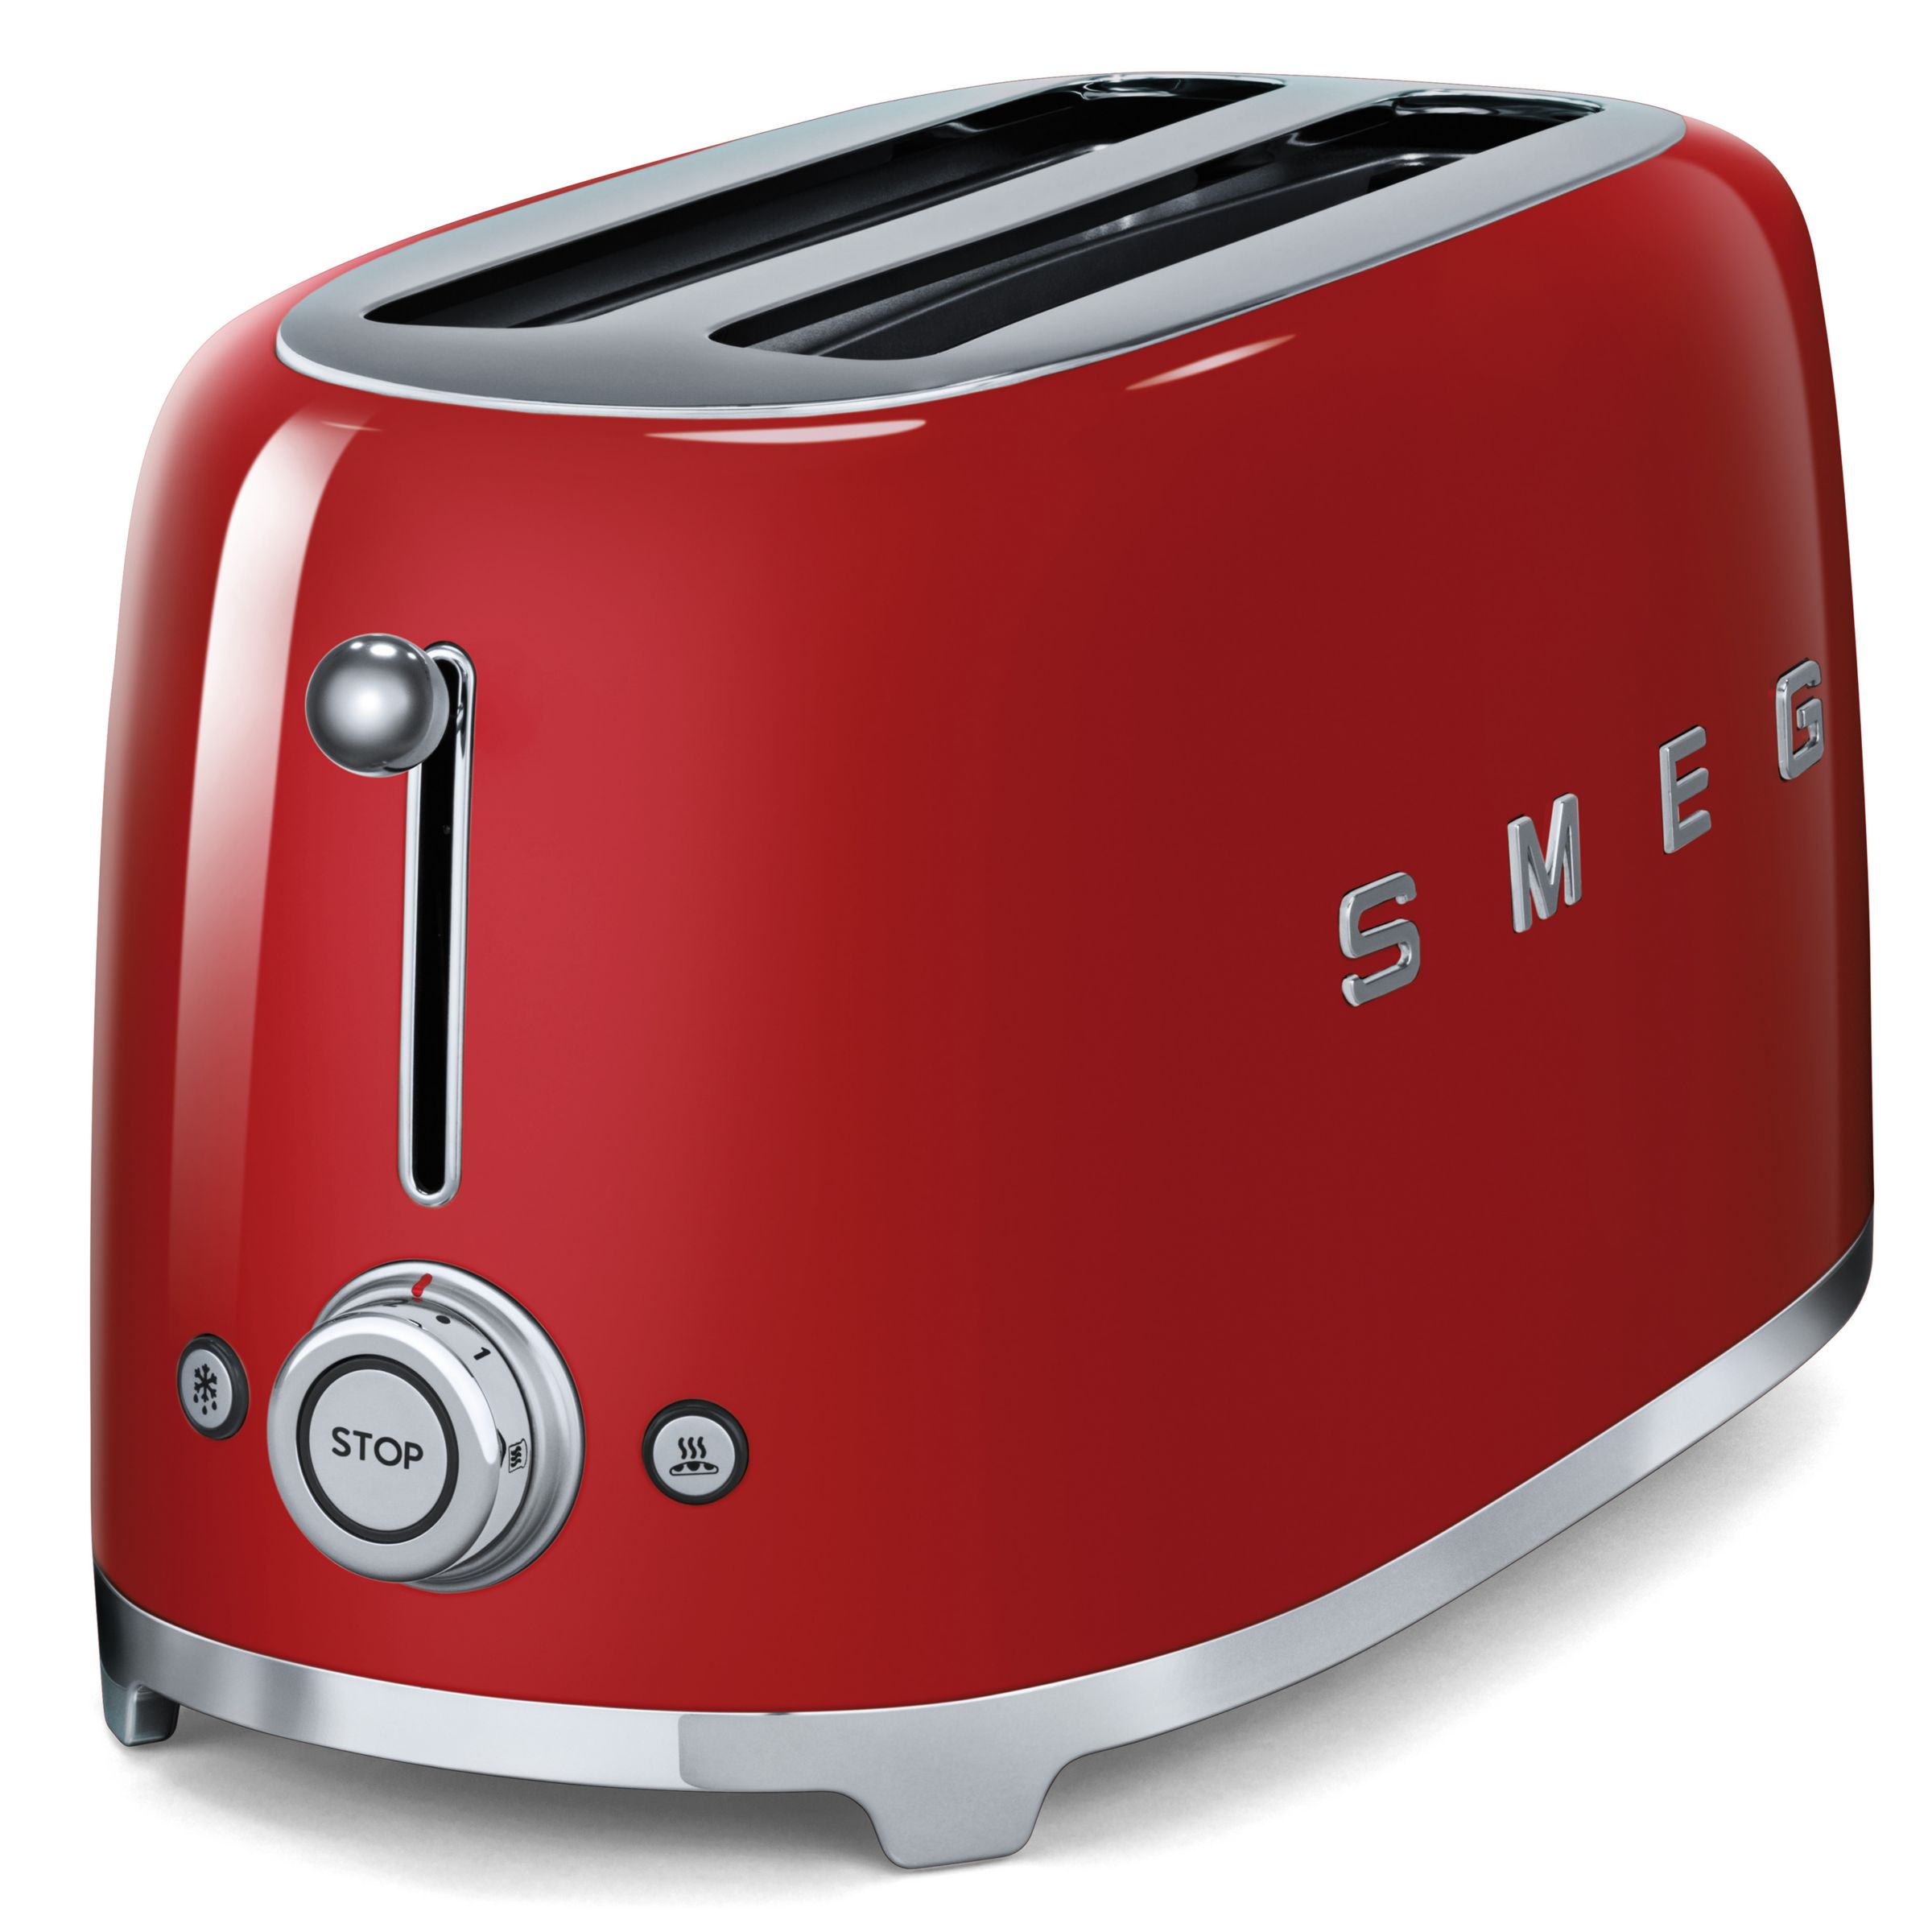 Smeg toaster reviews